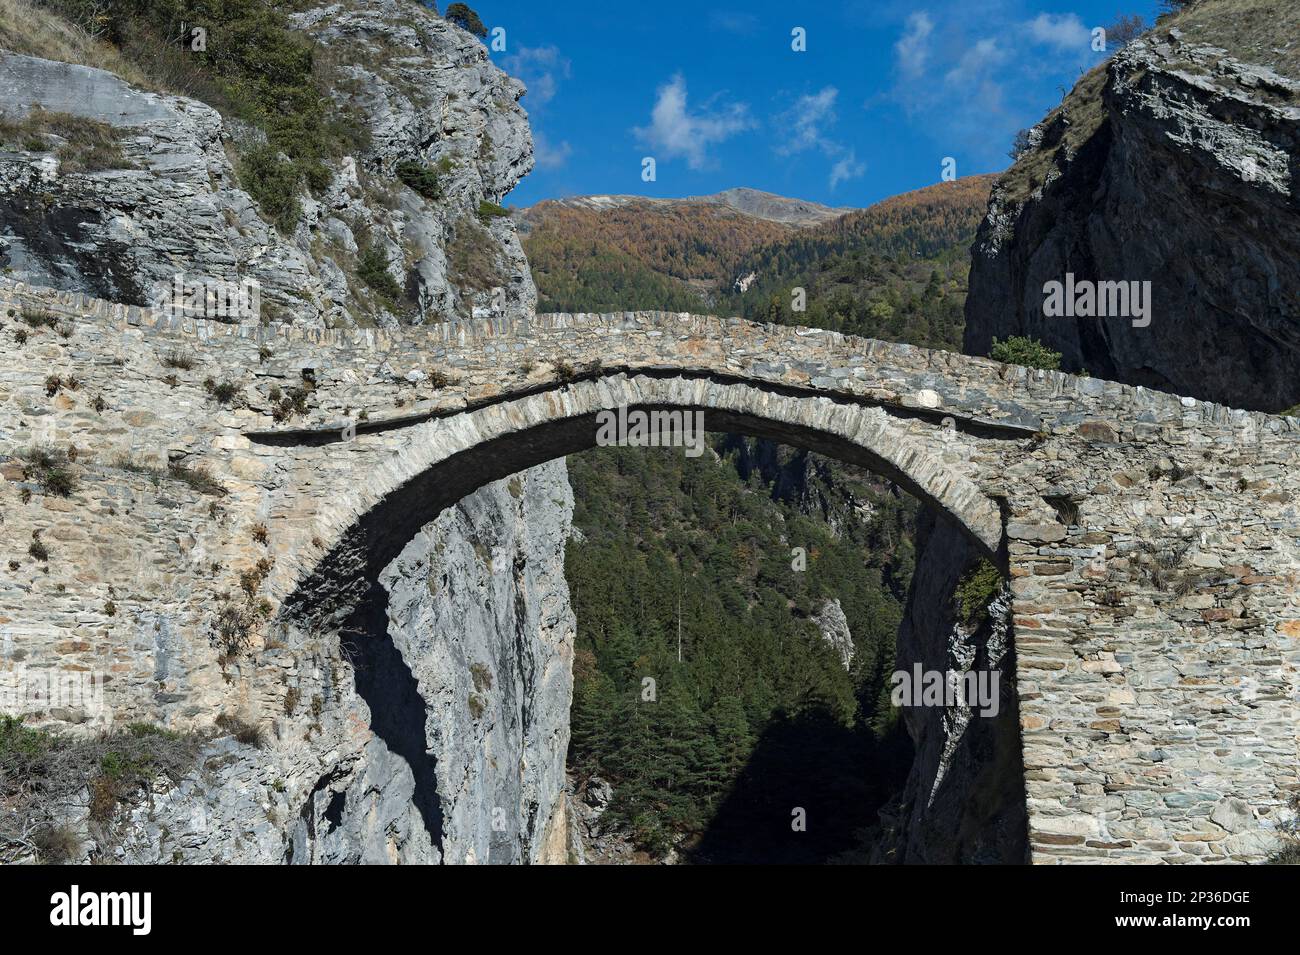 Die hohe Brücke, die historische Steinbogenbrücke aus dem 16. Jahrhundert, erstreckt sich über den Feschelbach zwischen Leuk und Erschmatt, Wallis, Schweiz Stockfoto